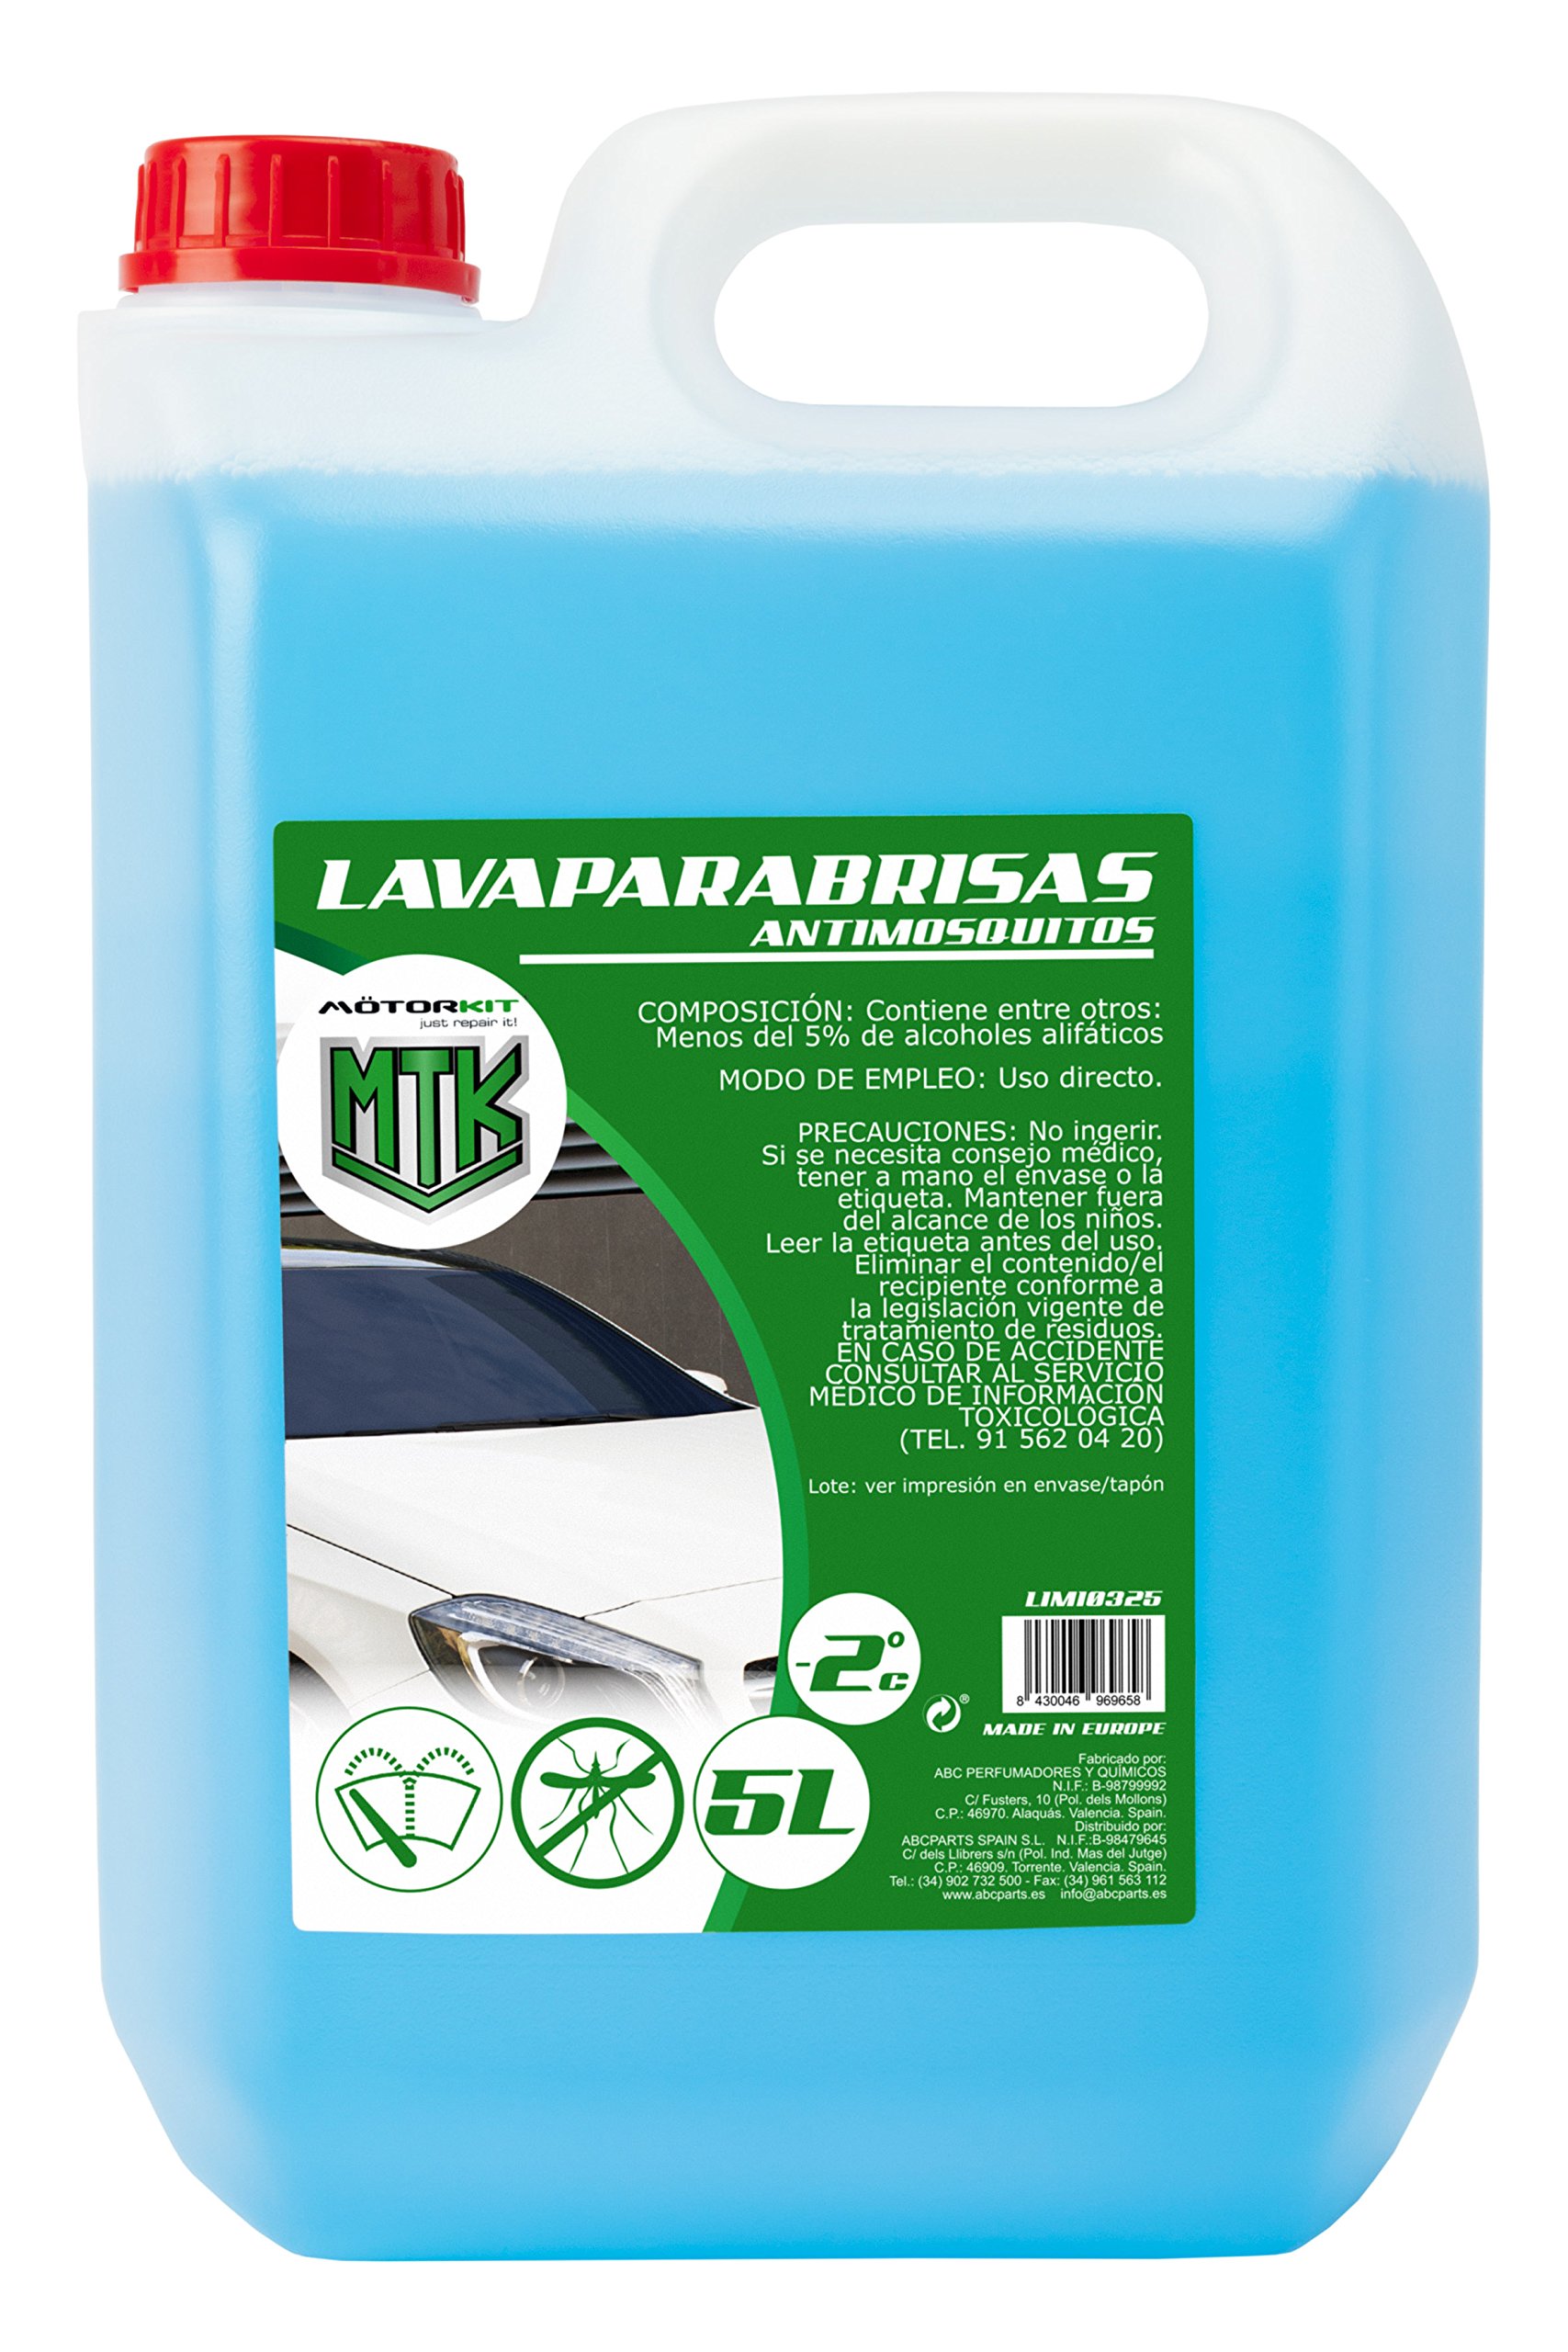 5L de Lavaparabrisas Antimosquitos solo 3,1€